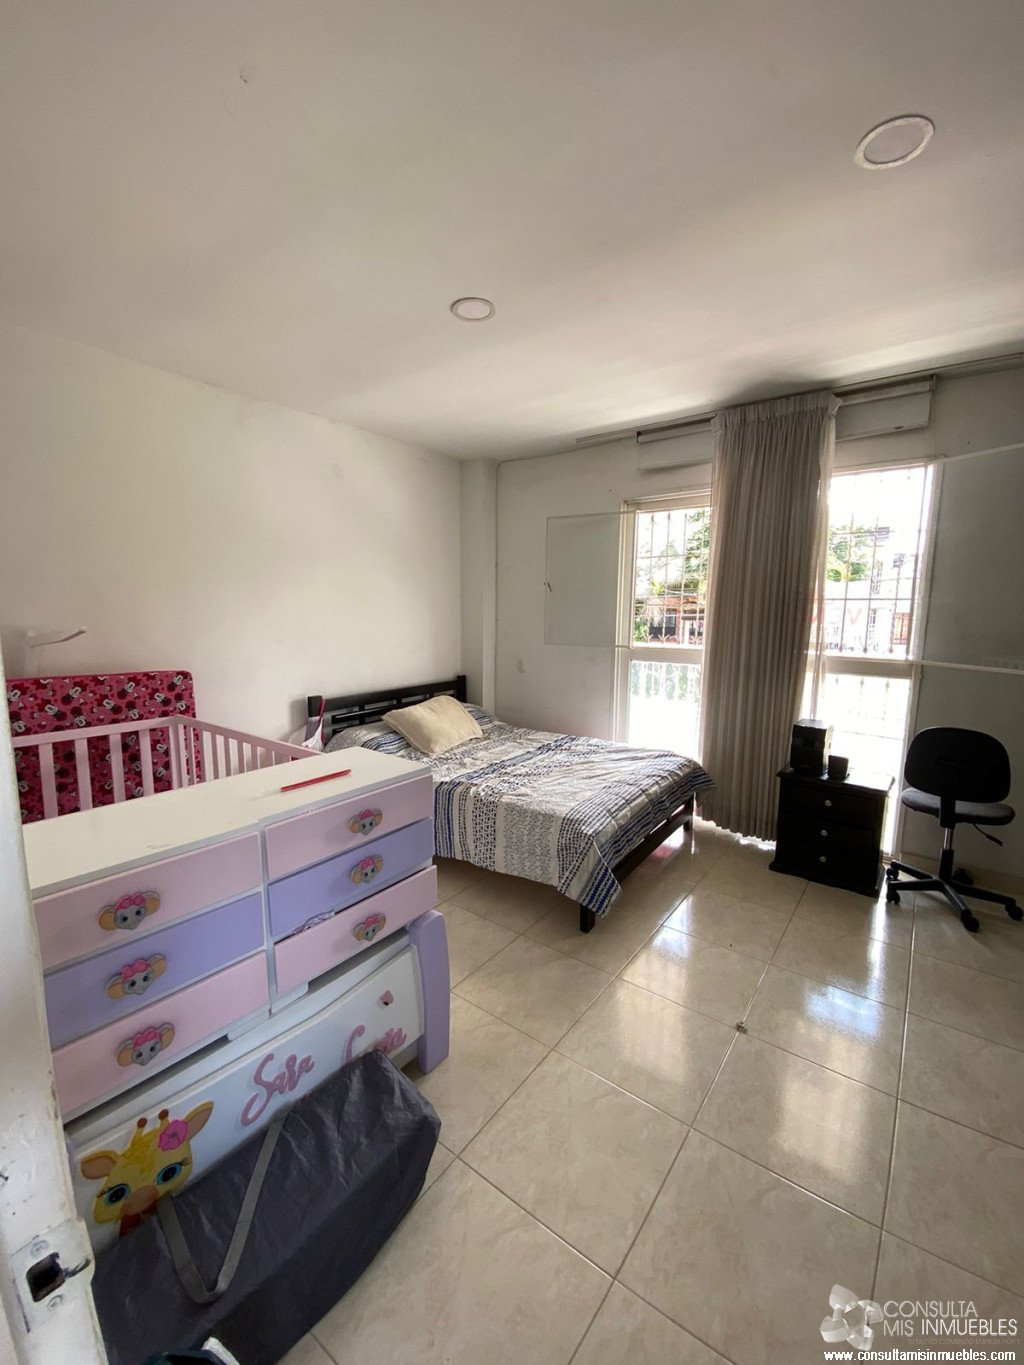 Vendo Casa en el Barrio Ciudadela Comfenalco en Ibagué, Tolima de Colombia | Consulta Mis Inmuebles S.A.S. | Tu nuevo comienzo empieza hoy!